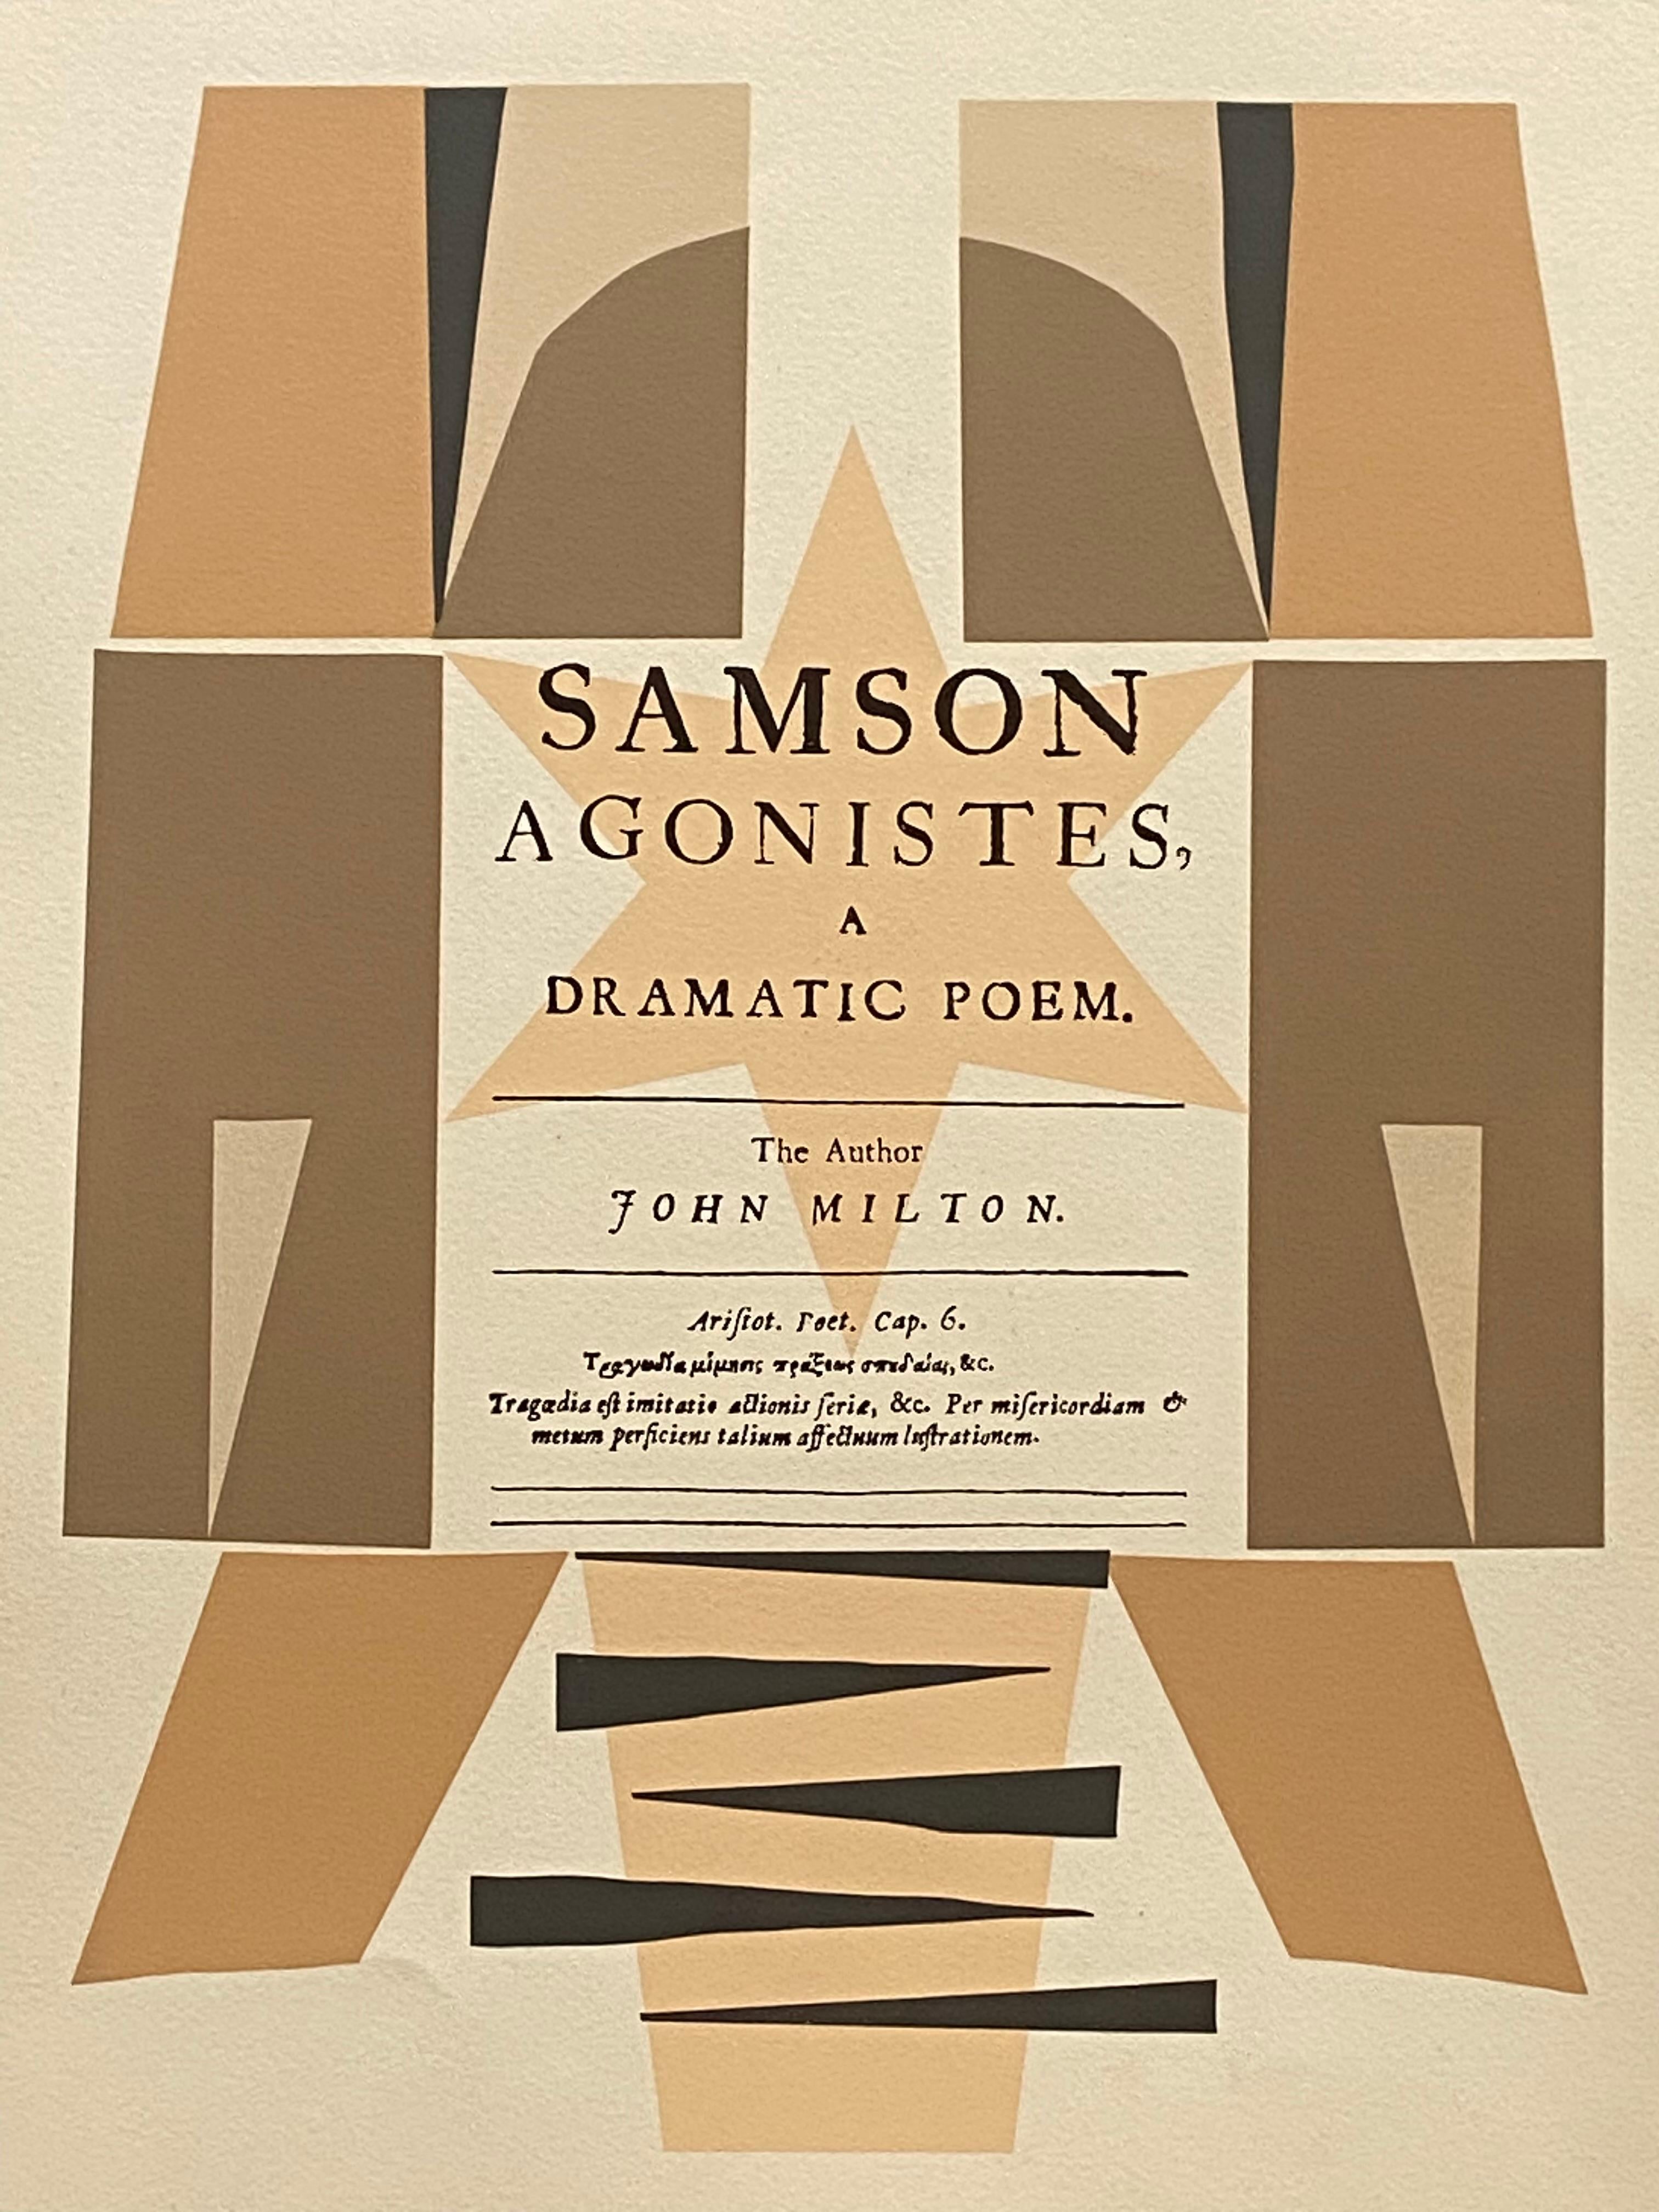 Abstract Print Robert Medley - Page de titre : Samson Agonistes, un pome dramatique. L'auteur, John Milton